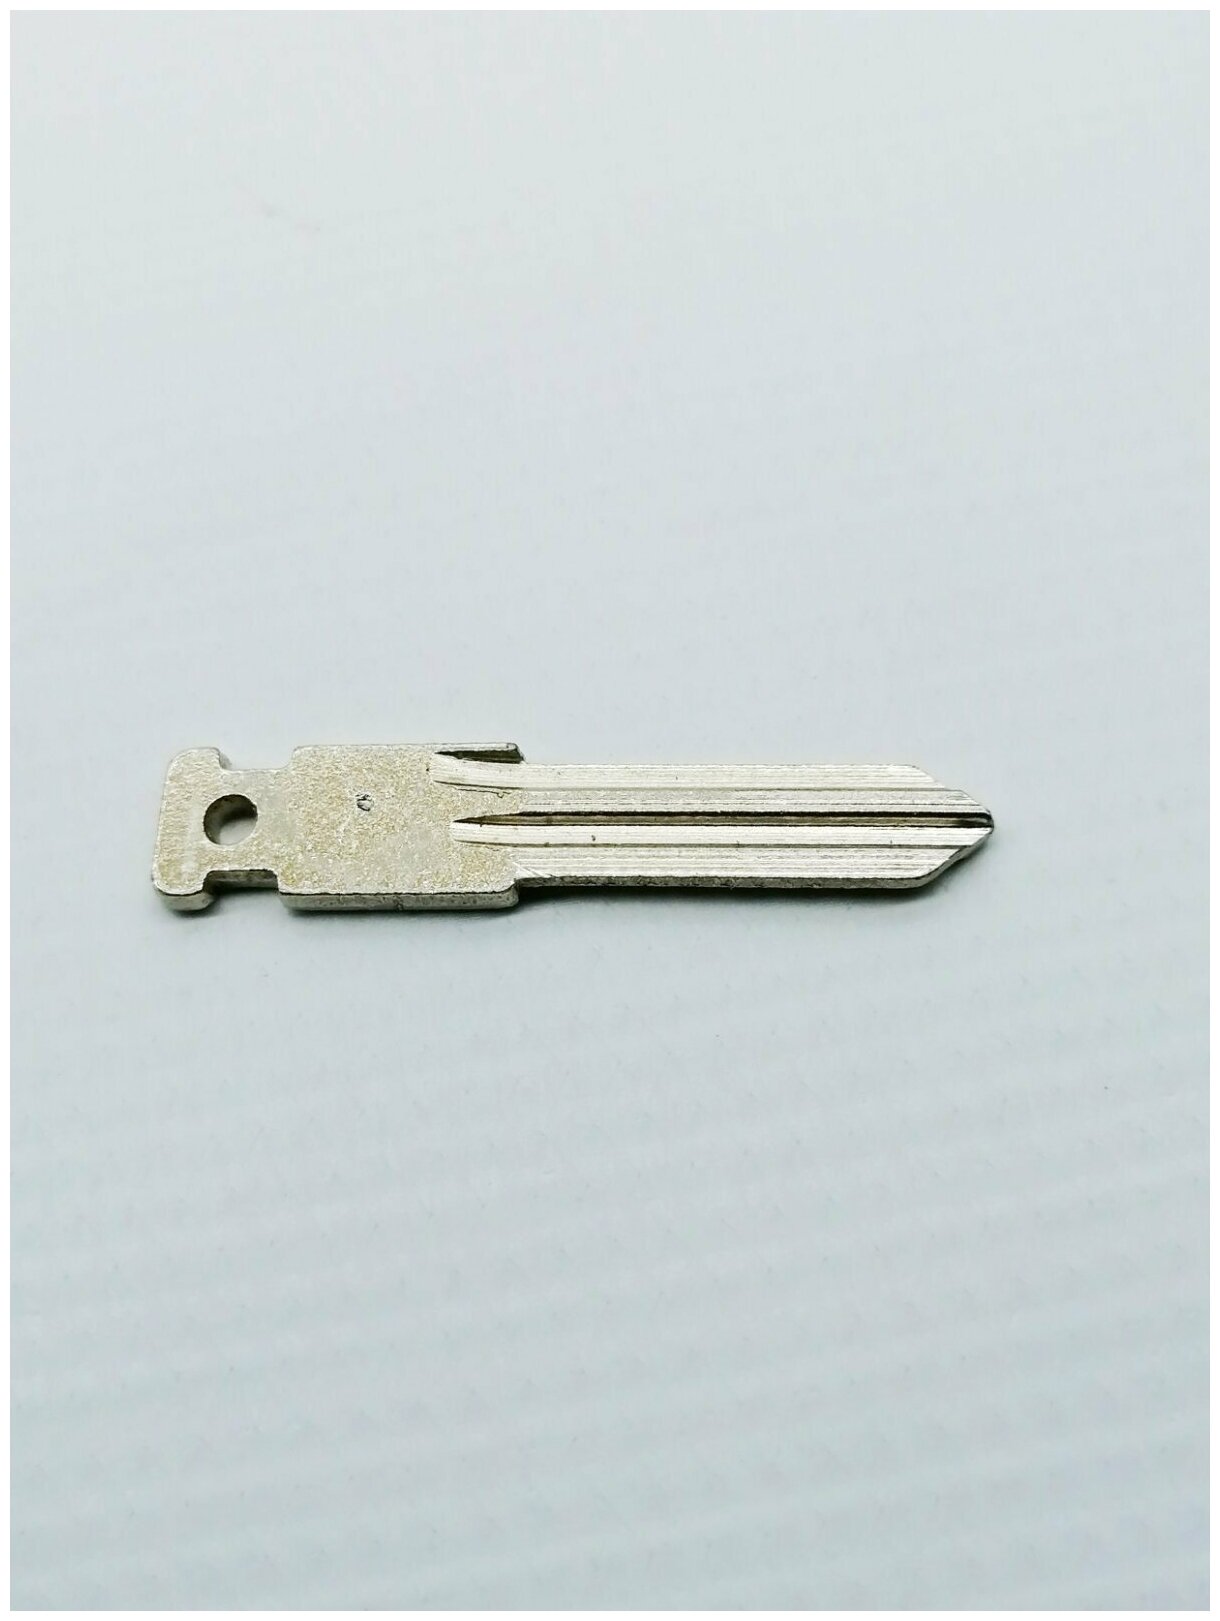 Ключ заготовка без брелка 1118/2170